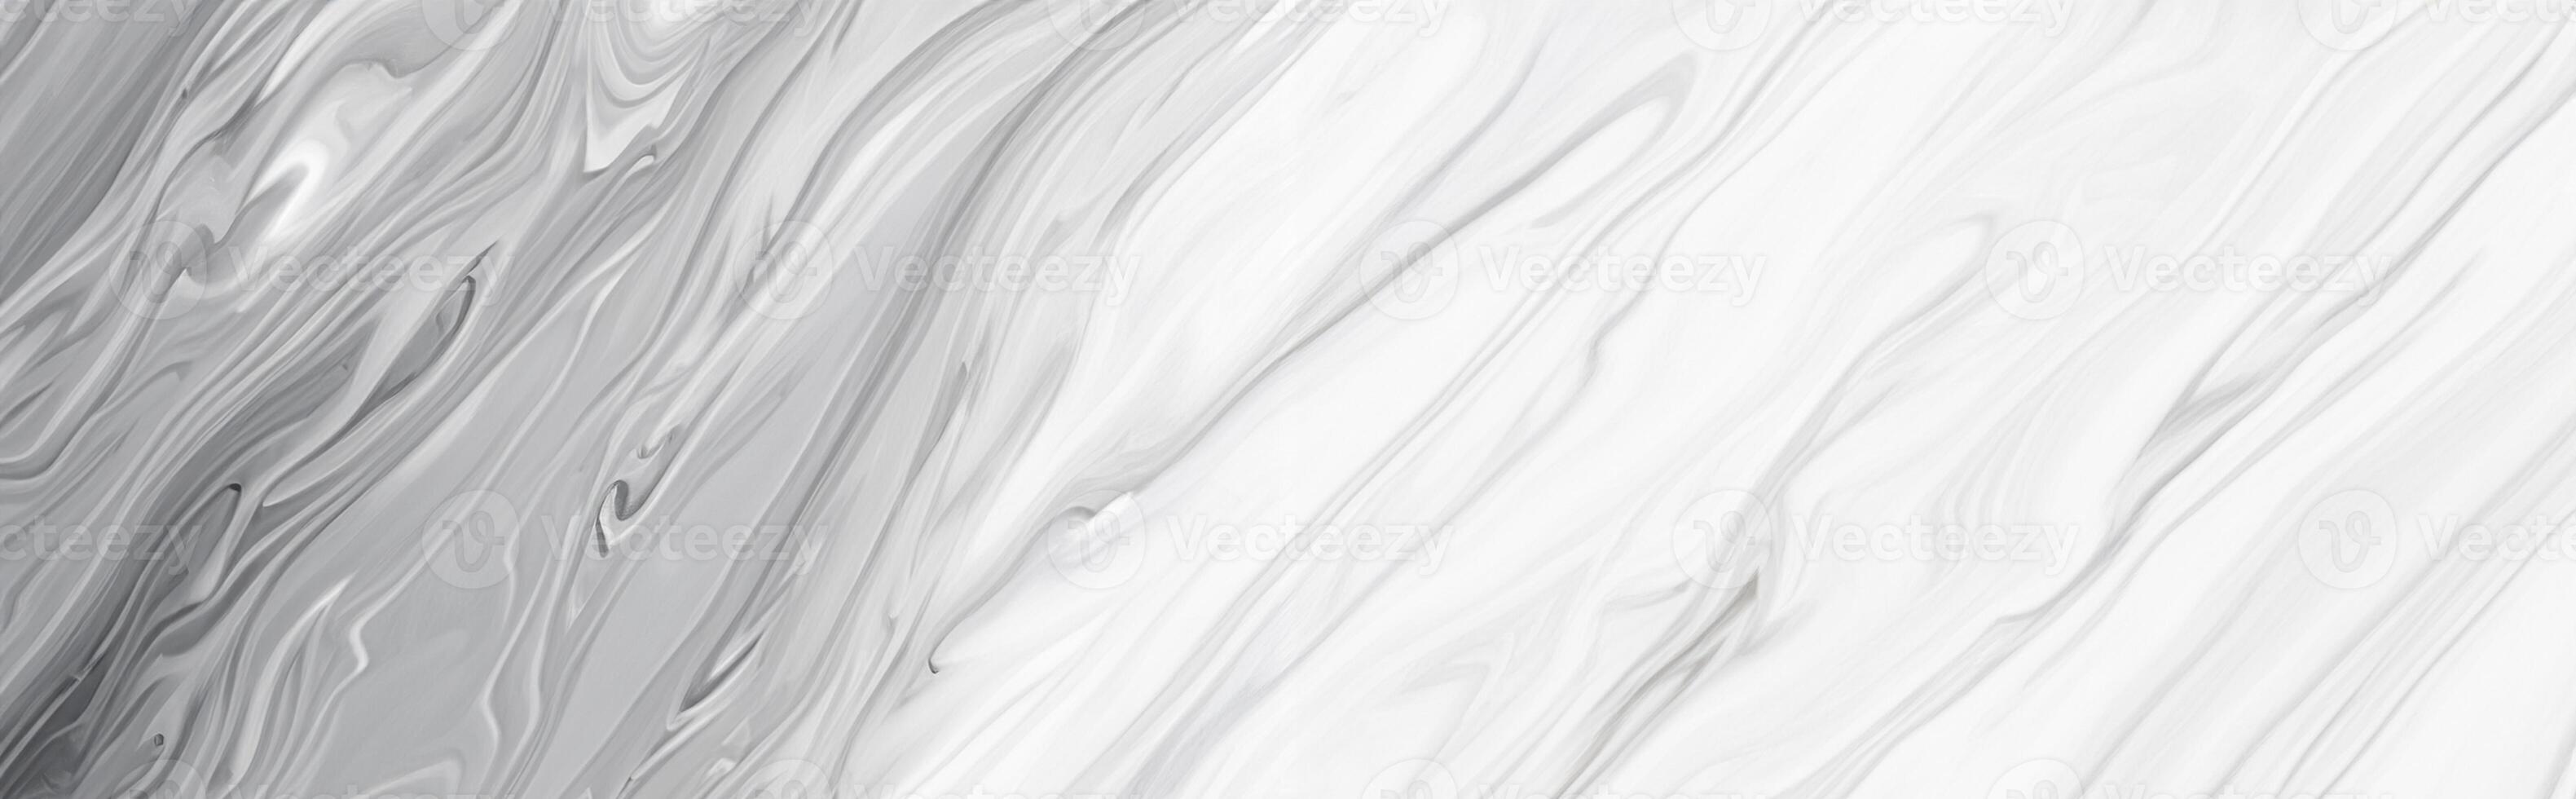 marmor wand weiß silber muster grau tinte grafik hintergrund abstrakt hell elegant schwarz für do grundriss keramiktheke textur steinfliese grauer hintergrund natürlich für die innenausstattung. foto